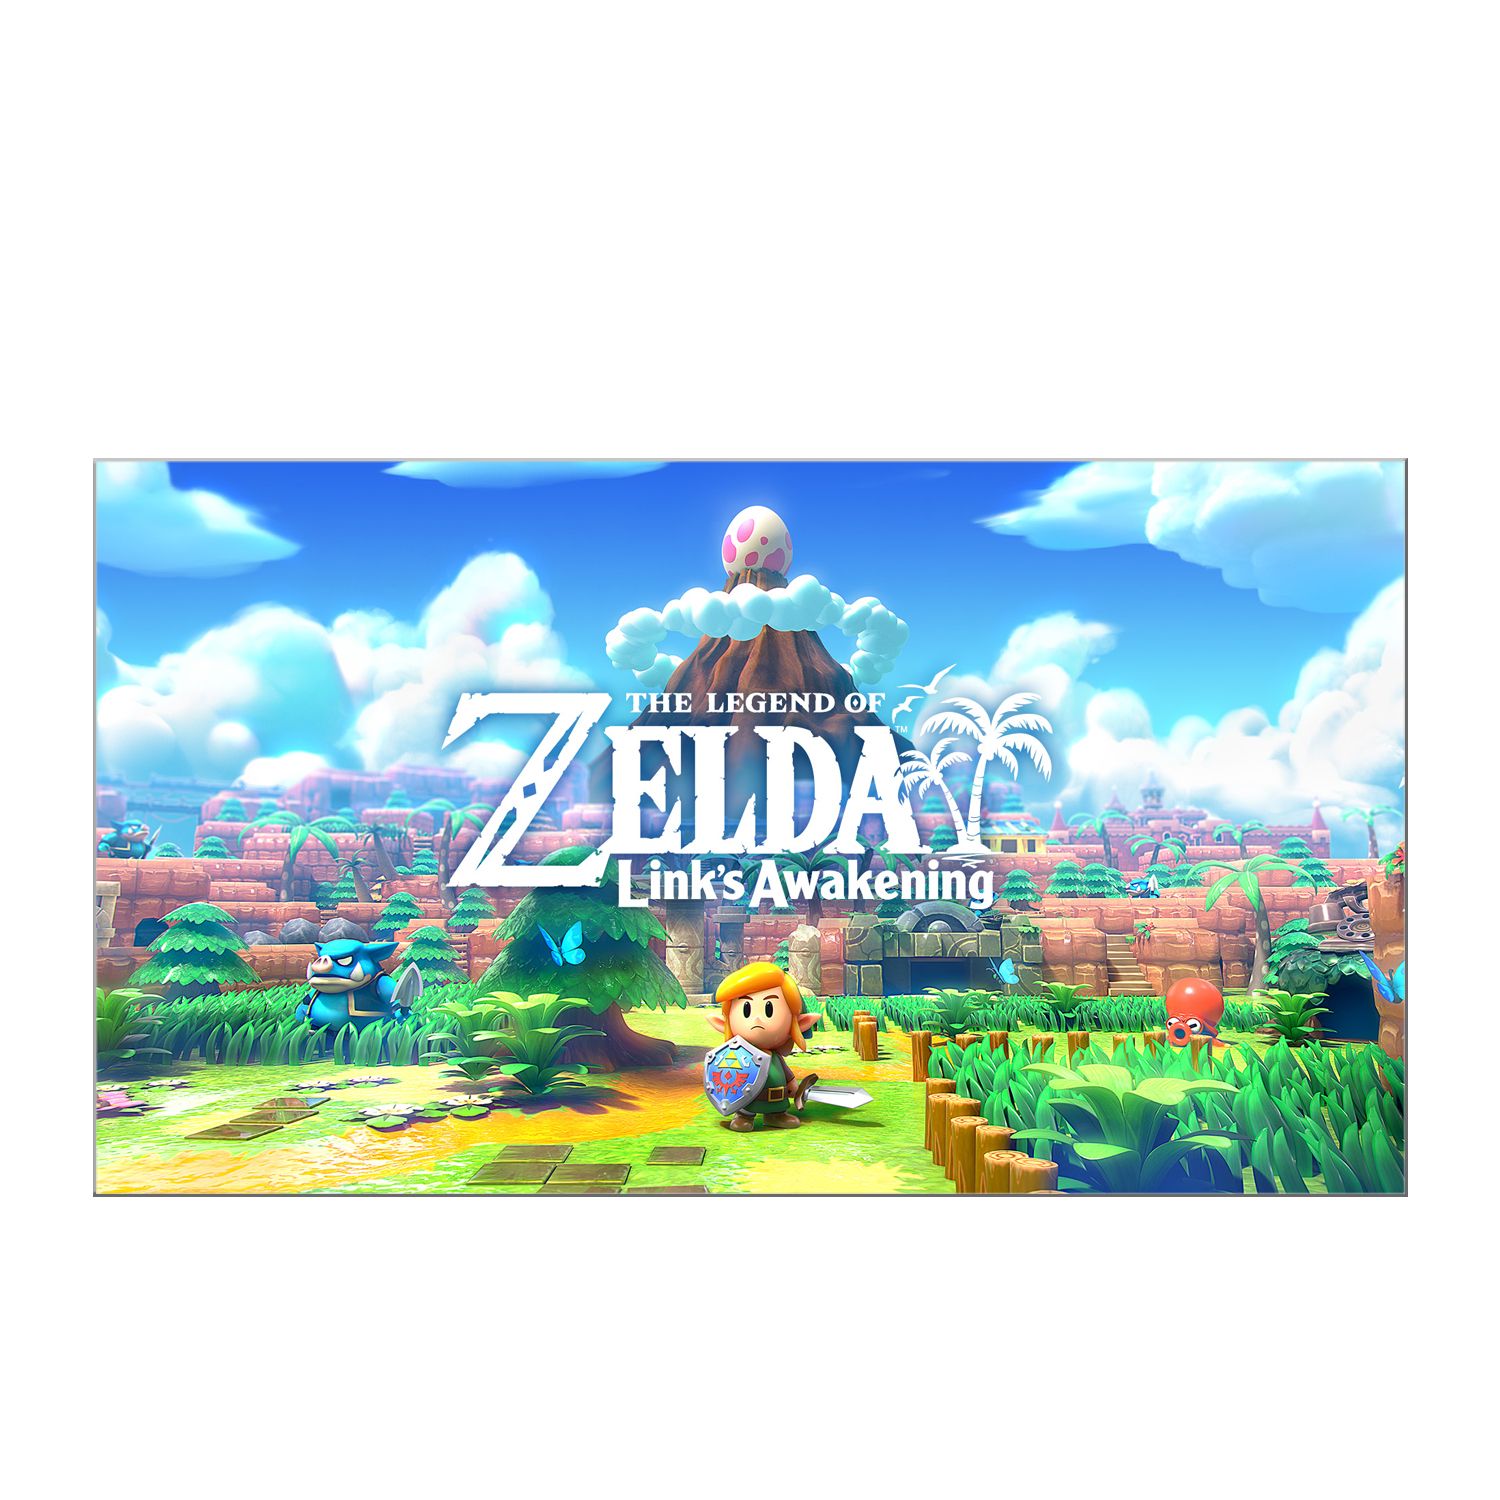 The Legend of Zelda Links Awakening, Nintendo Switch, [Digital Download] $41.99